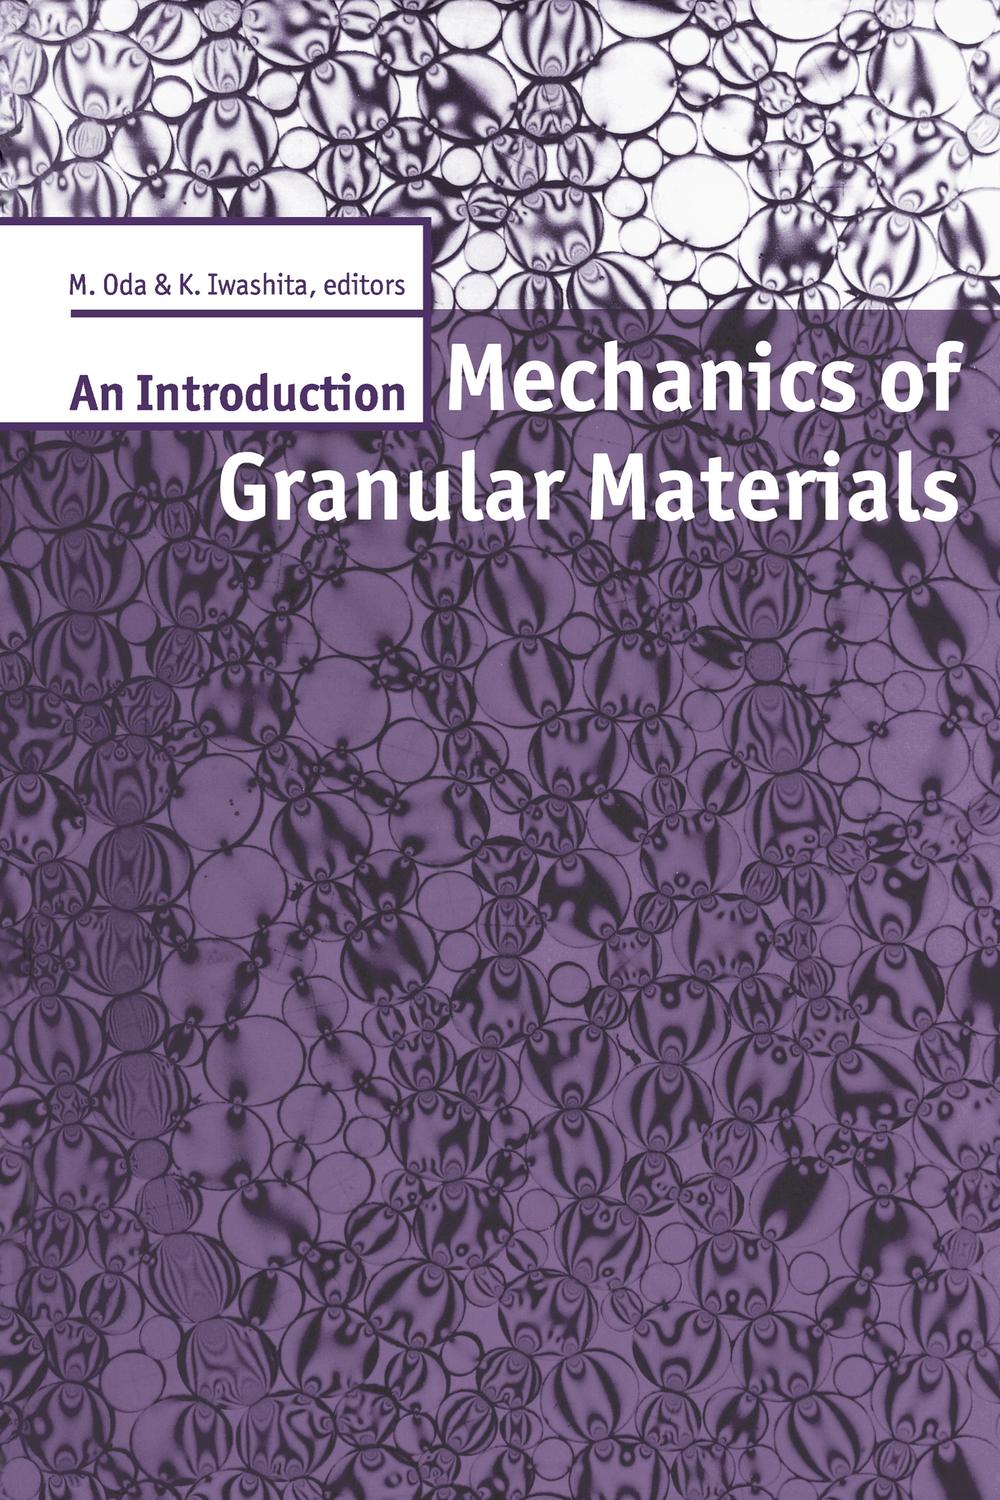 Mechanics of Granular Materials: An Introduction - K. Iwashita, M. Oda,,